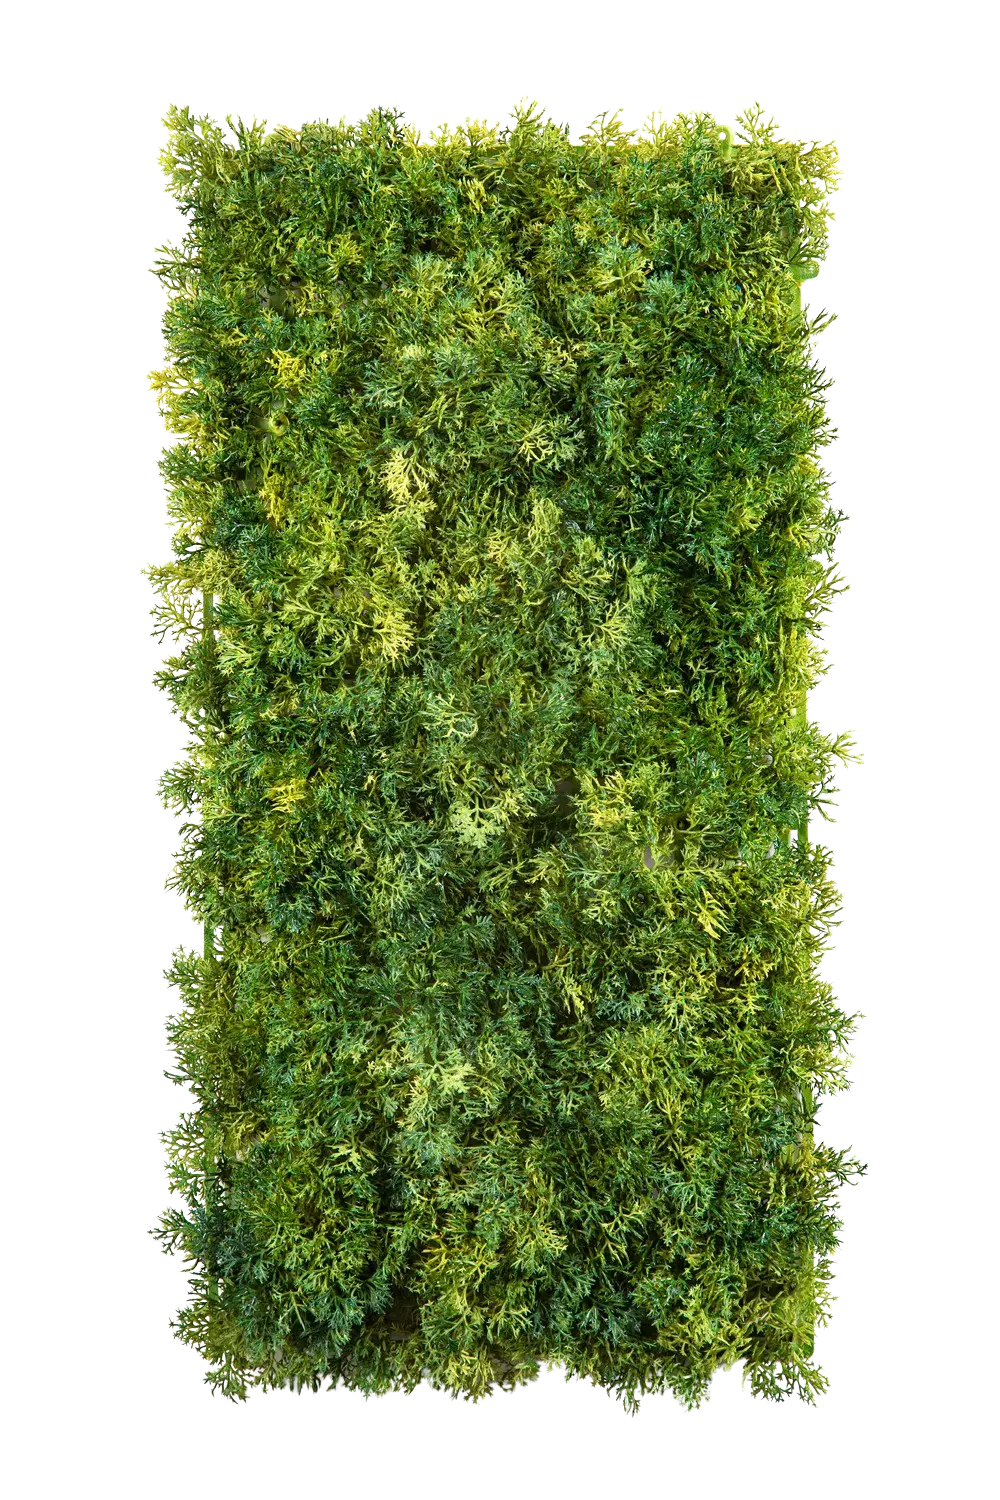 Künstlicher Moos Teppich - Martin auf transparentem Hintergrund mit echt wirkenden Kunstblättern. Diese Kunstpflanze gehört zur Gattung/Familie der "Moose" bzw. "Kunst-Moose".